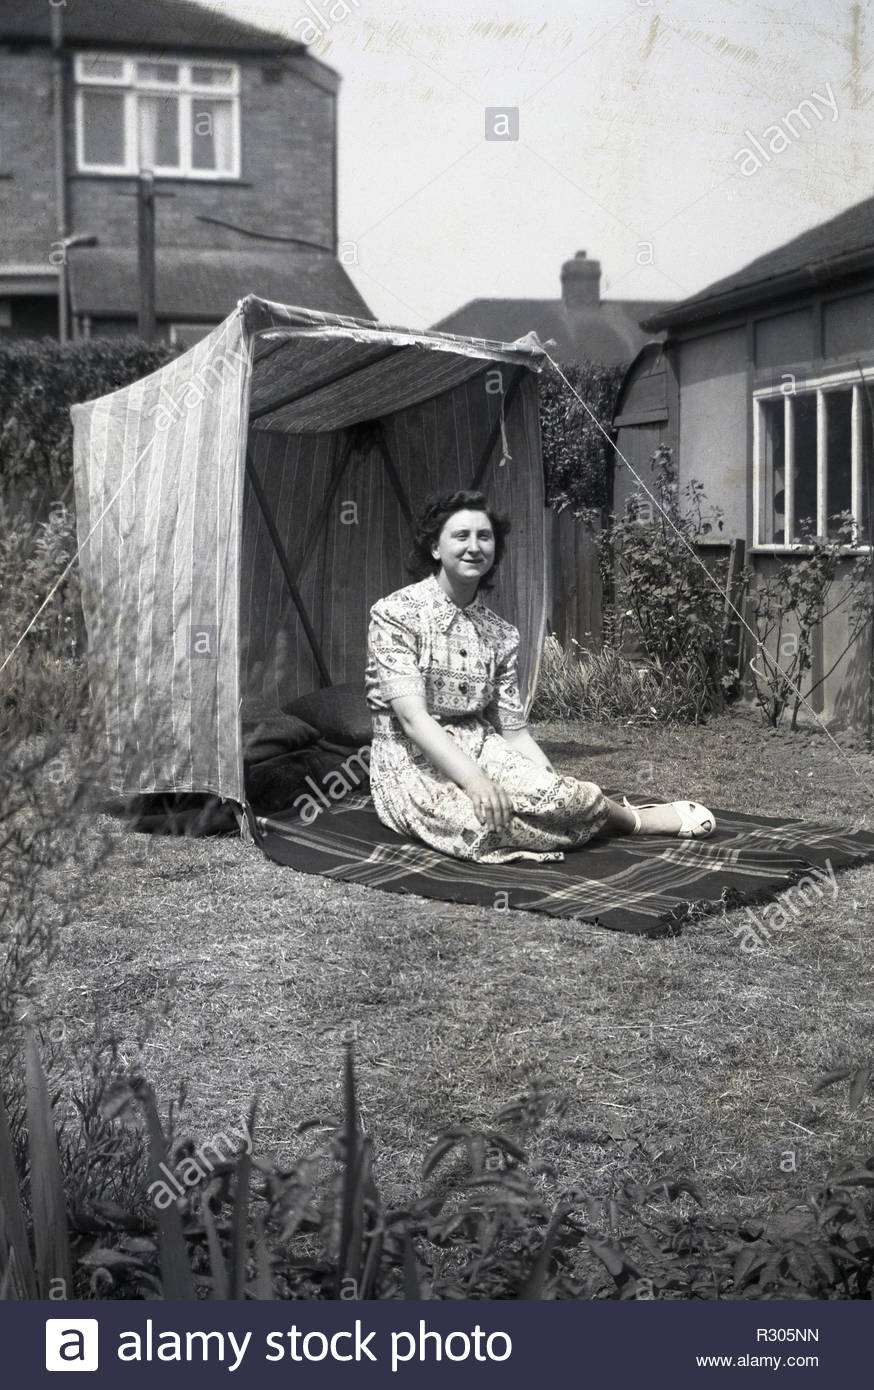 annees 1950 historiques femme assise sur un tapis a l exterieur dans un jardin a cote d une tente ou un abri du vent england uk image